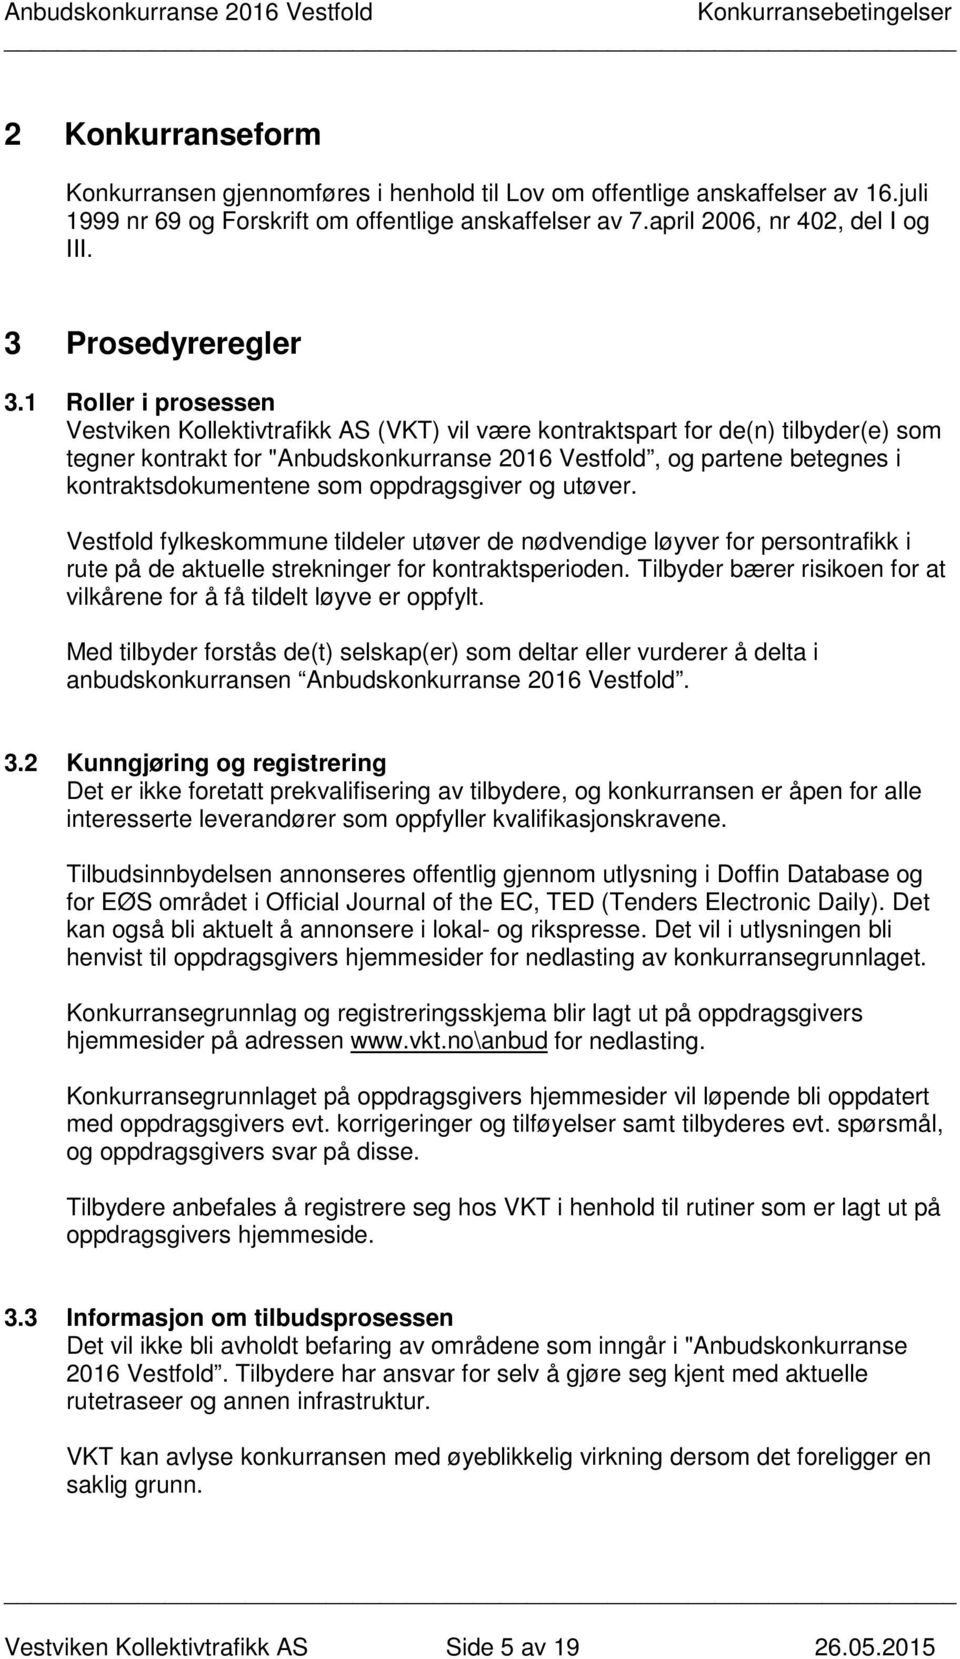 1 Roller i prosessen Vestviken Kollektivtrafikk AS (VKT) vil være kontraktspart for de(n) tilbyder(e) som tegner kontrakt for "Anbudskonkurranse 2016 Vestfold, og partene betegnes i